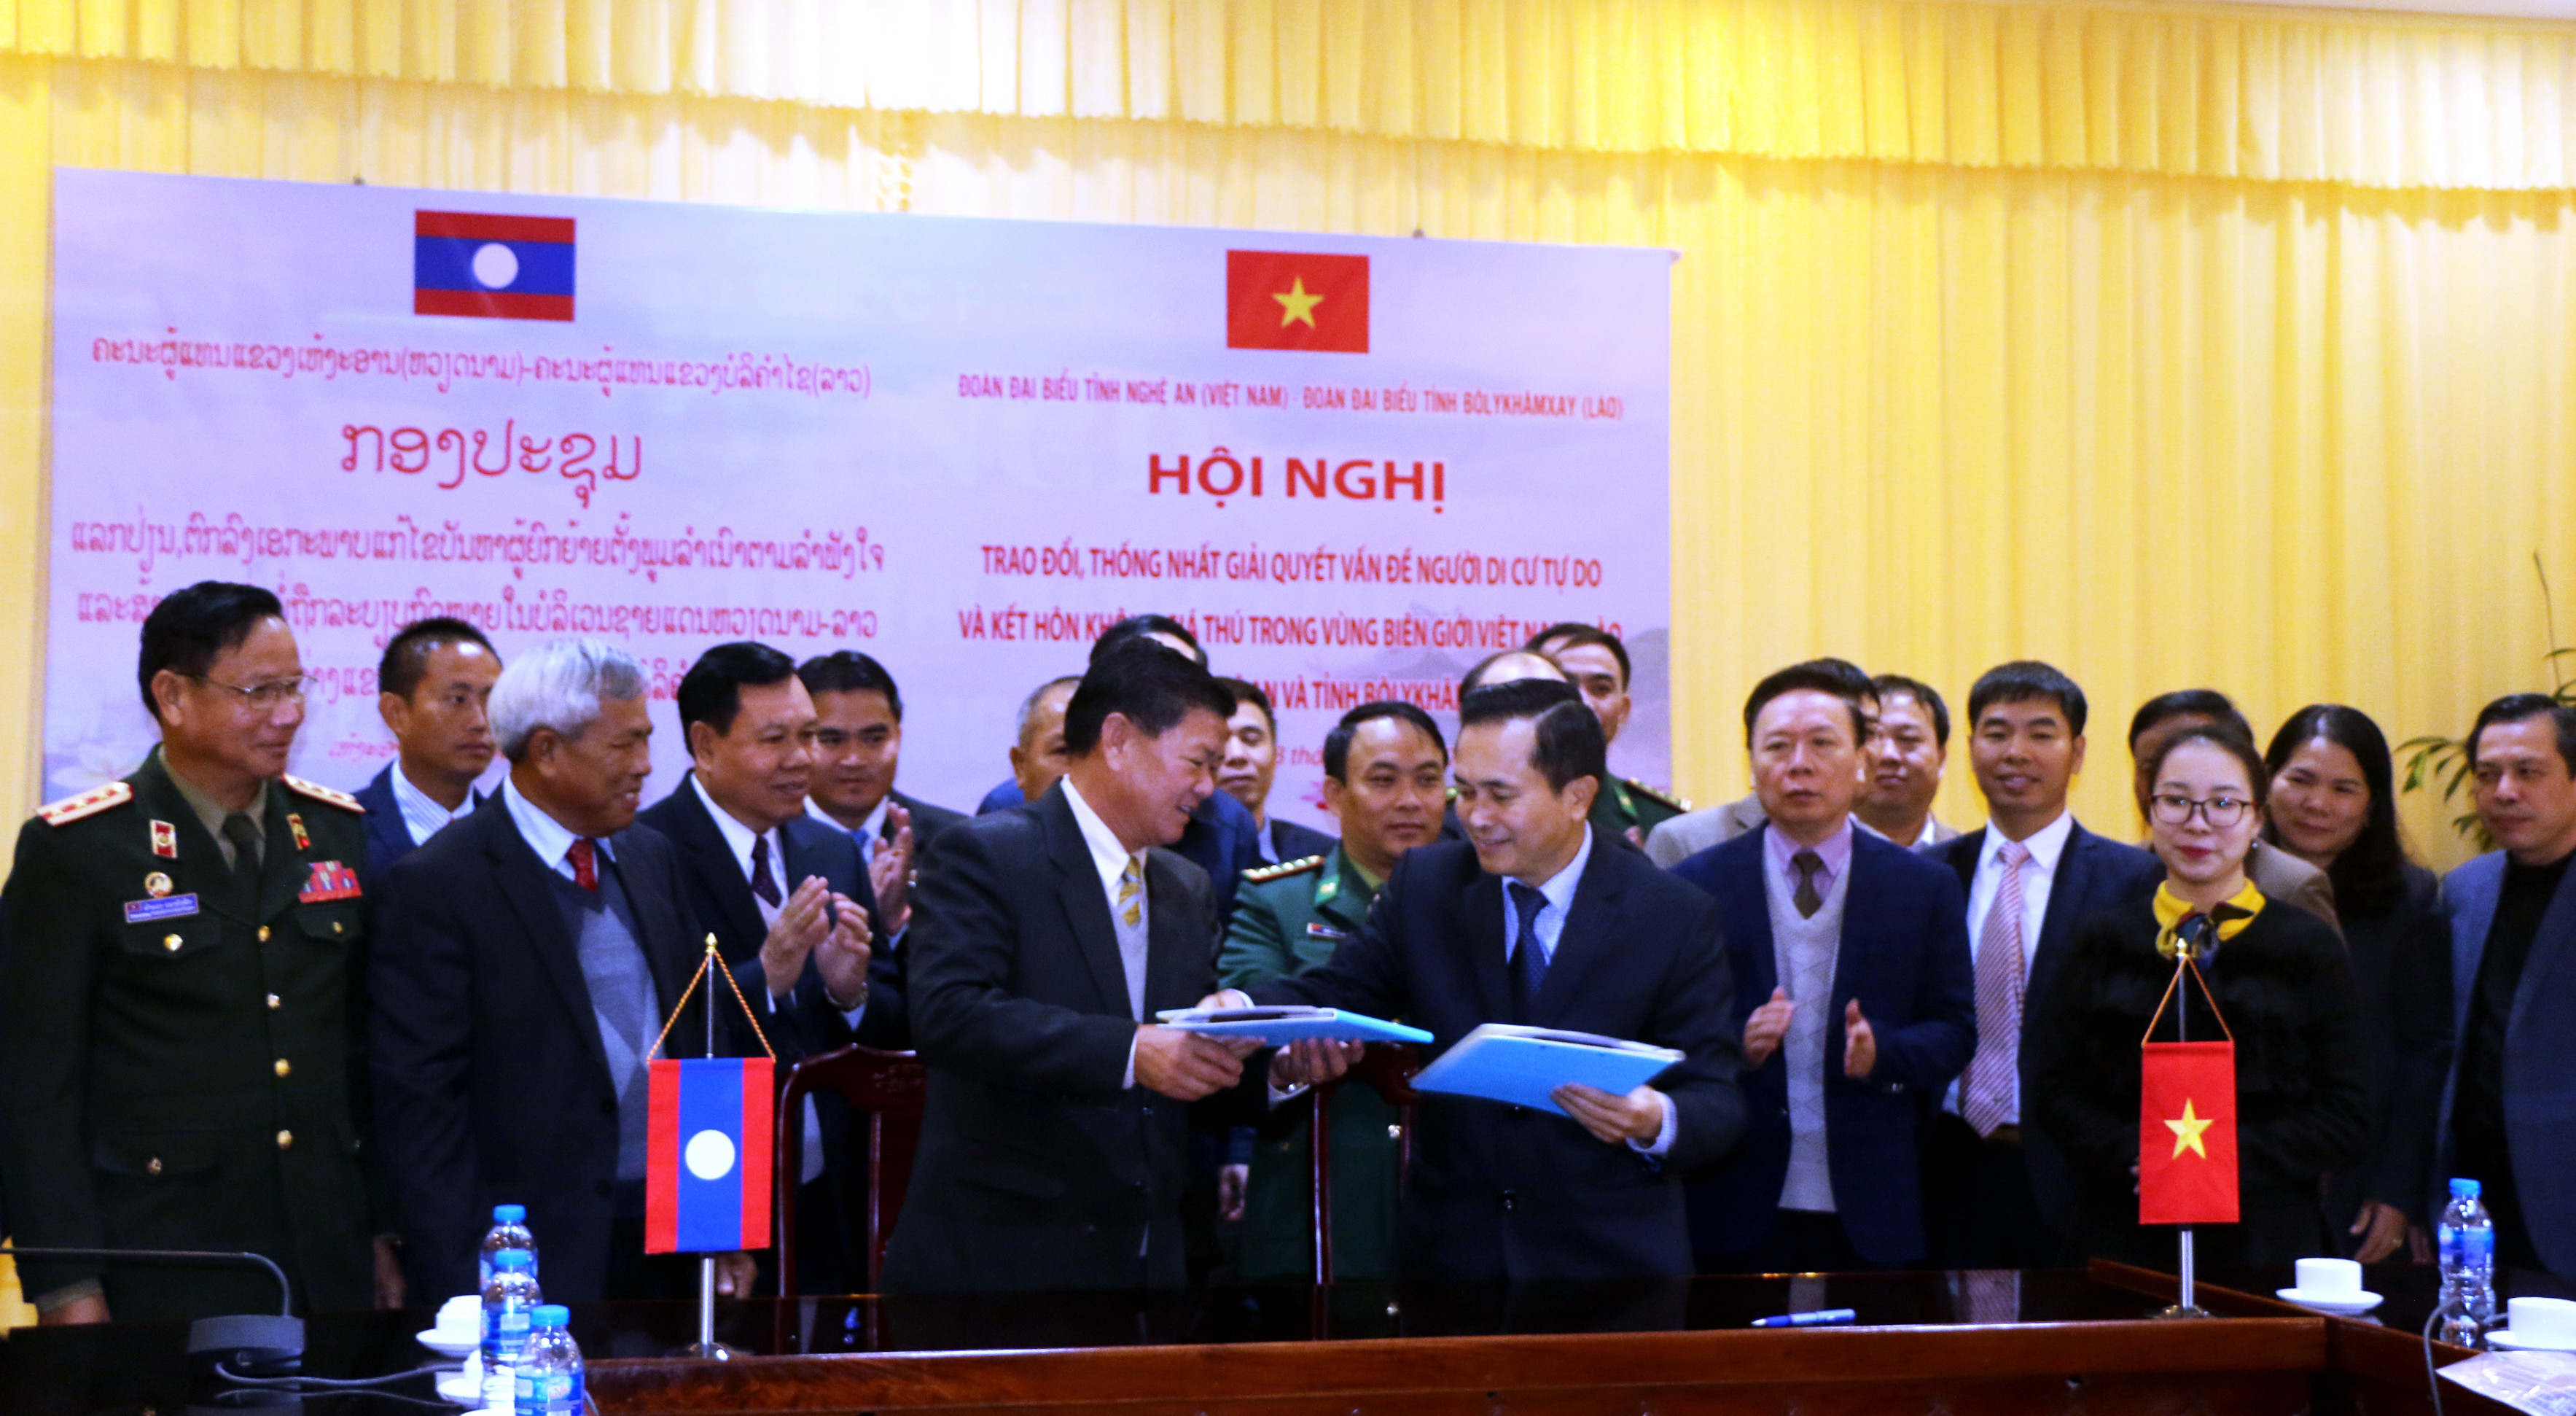 Lãnh đạo tỉnh Nghệ An và Bolykhămxay( Lào) ký biên bản thống nhất giải quyết vấn đề người di cư tự do.Ảnh: K.L